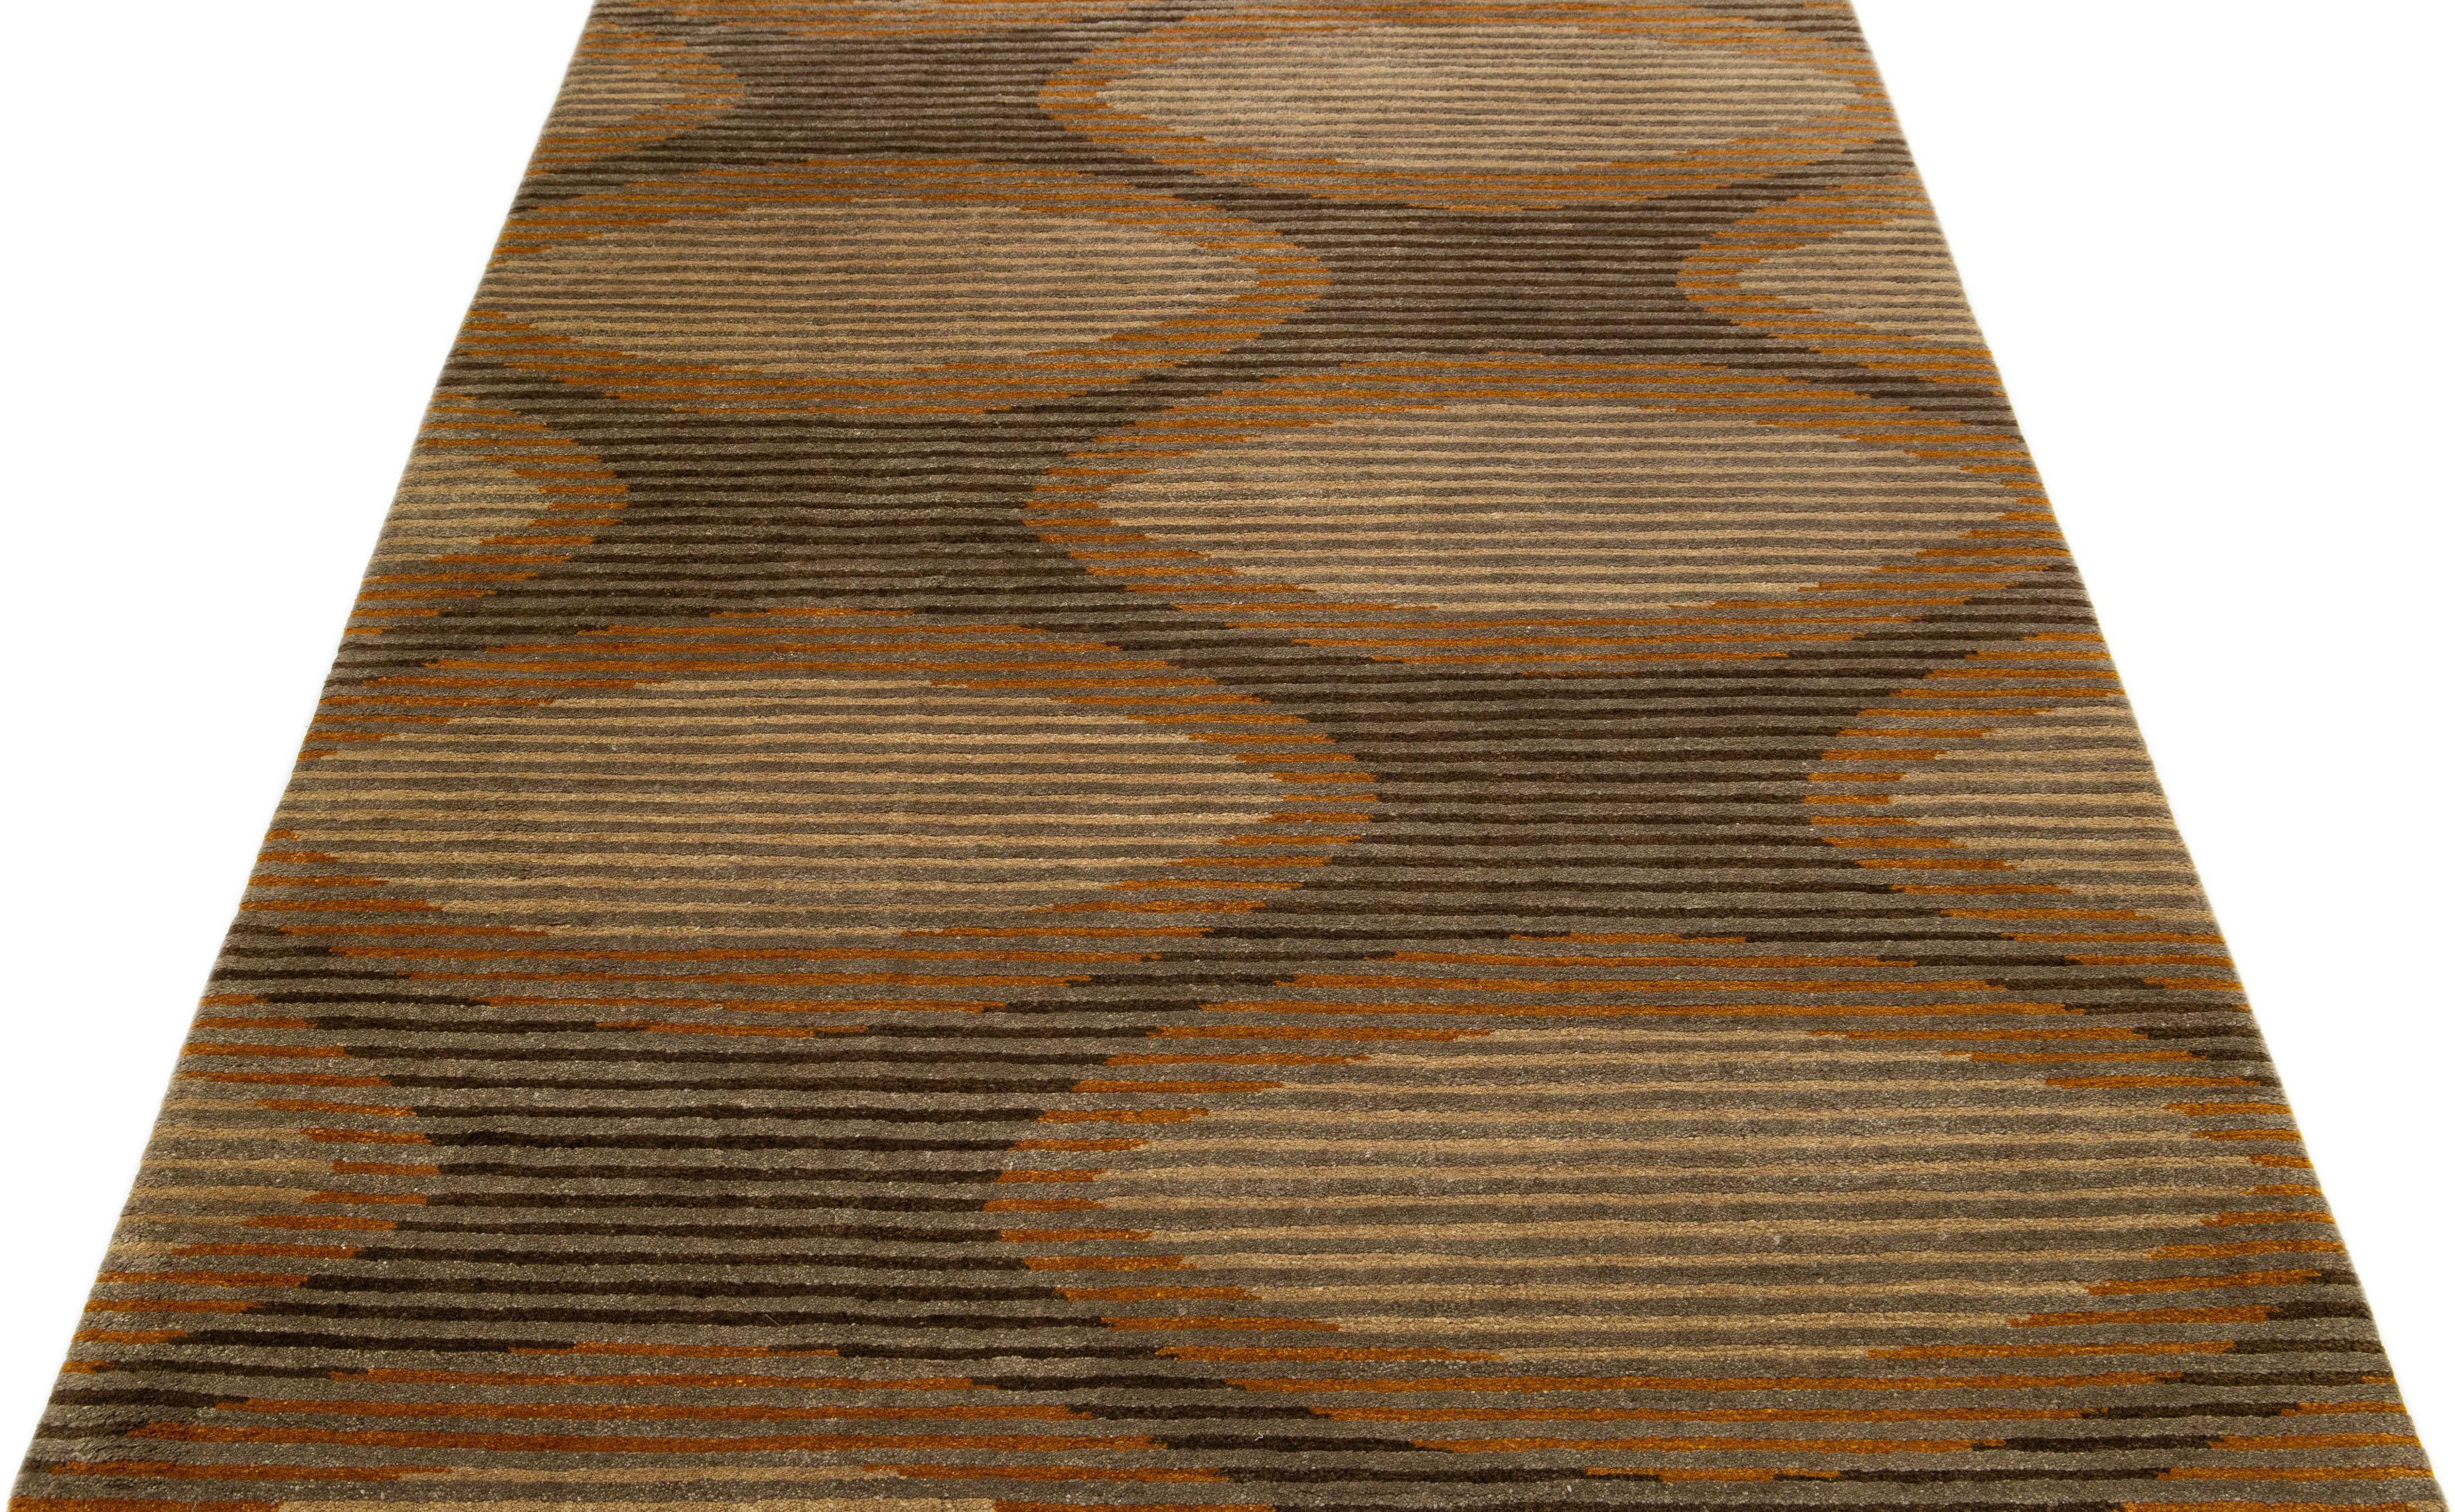 Dieser zeitgenössische Tufenkian-Teppich zeichnet sich durch ein braunes, abstraktes Feld aus. Es ist mit grauen, hellbraunen und goldroten Akzenten angereichert, die alle zu einem stilvollen Allover-Design beitragen, das die Essenz des Modernismus